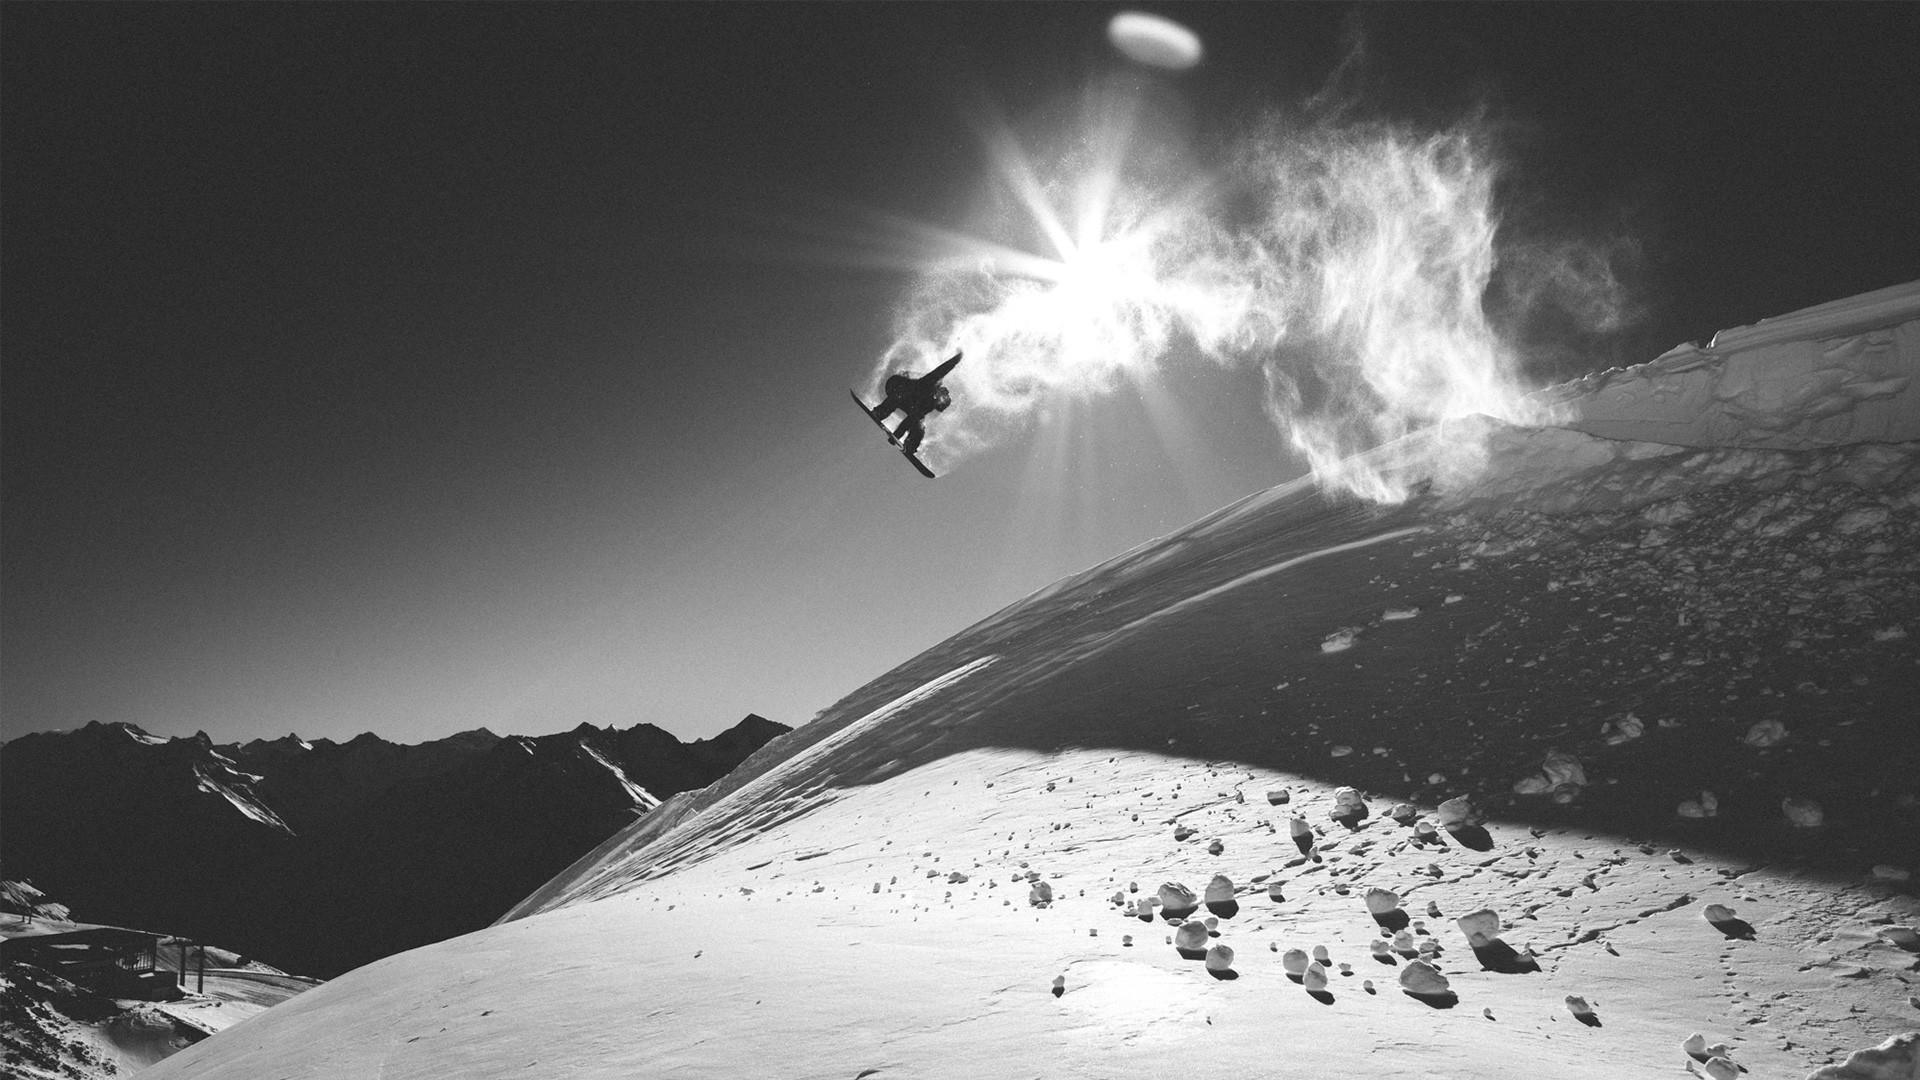 fondo de pantalla de snowboard,nieve,snowboard,esquí de estilo libre,deporte extremo,snowboarding